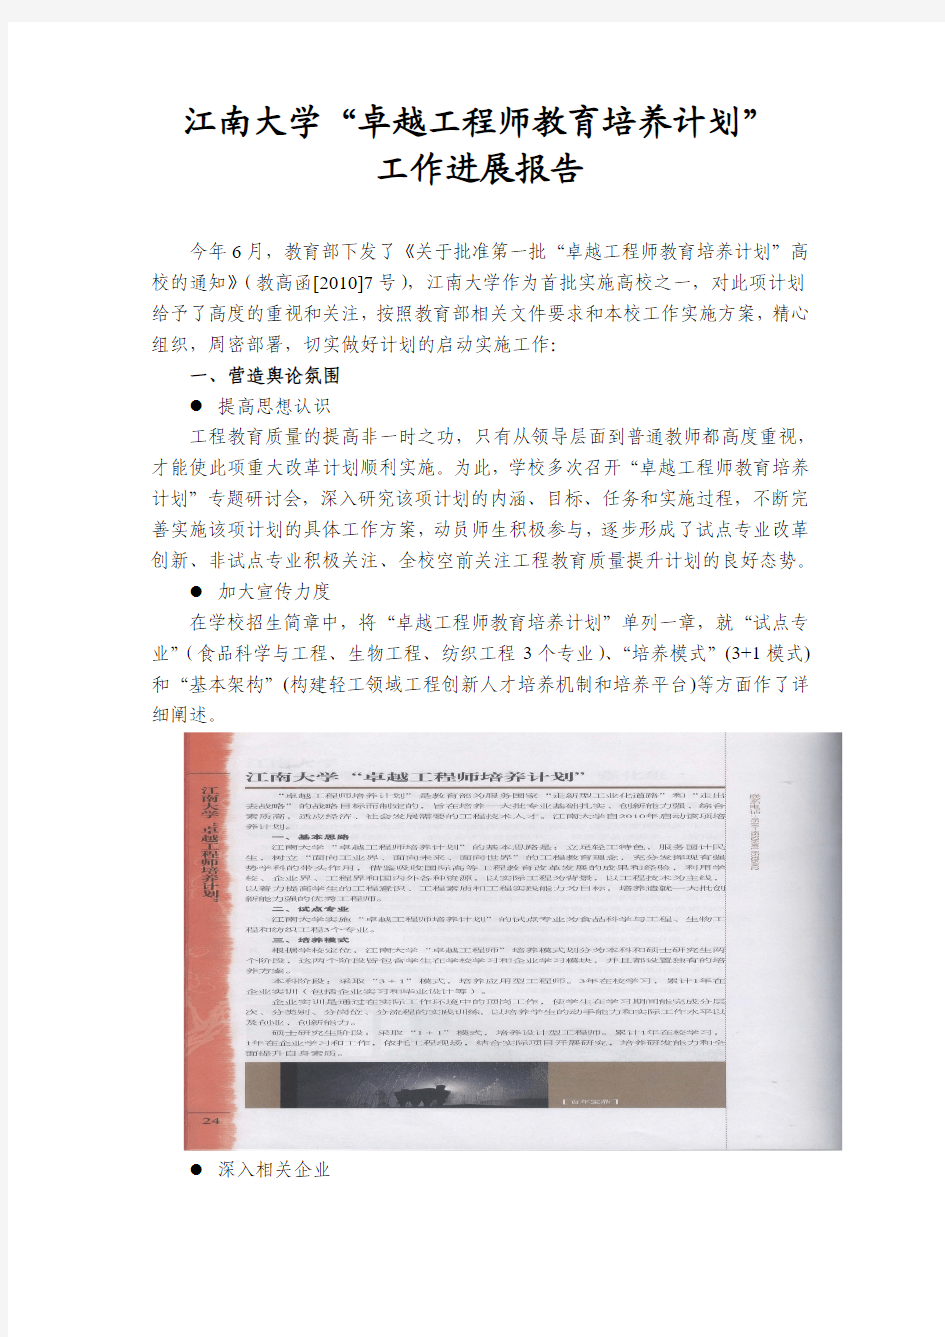 江南大学“卓越工程师教育培养计划” 工作进展报告